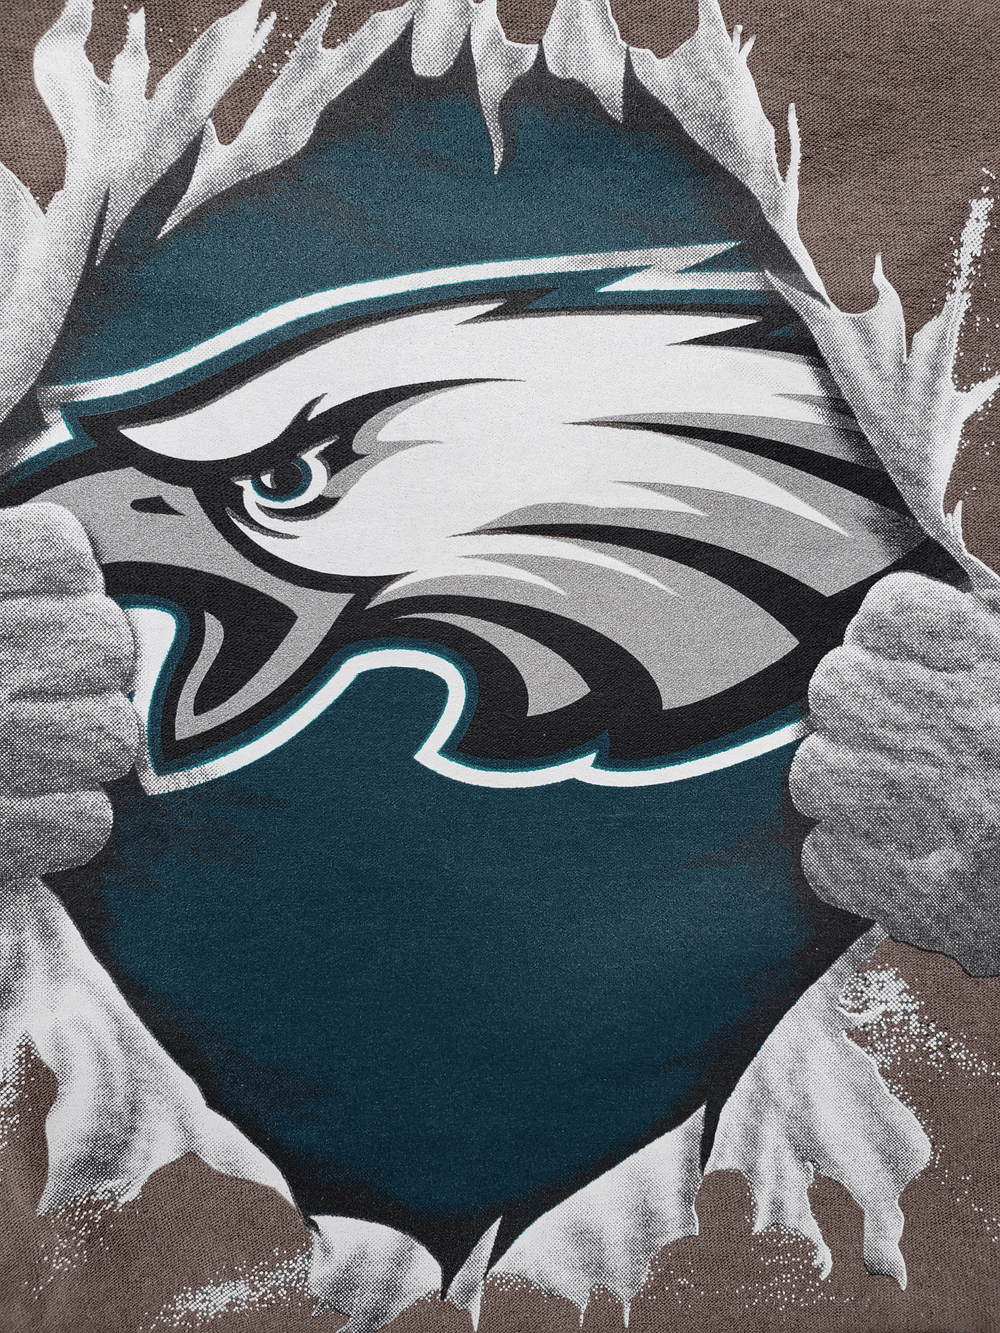 Philadelphia Eagles NFL football logo art - JacksonsOfAllTradesART